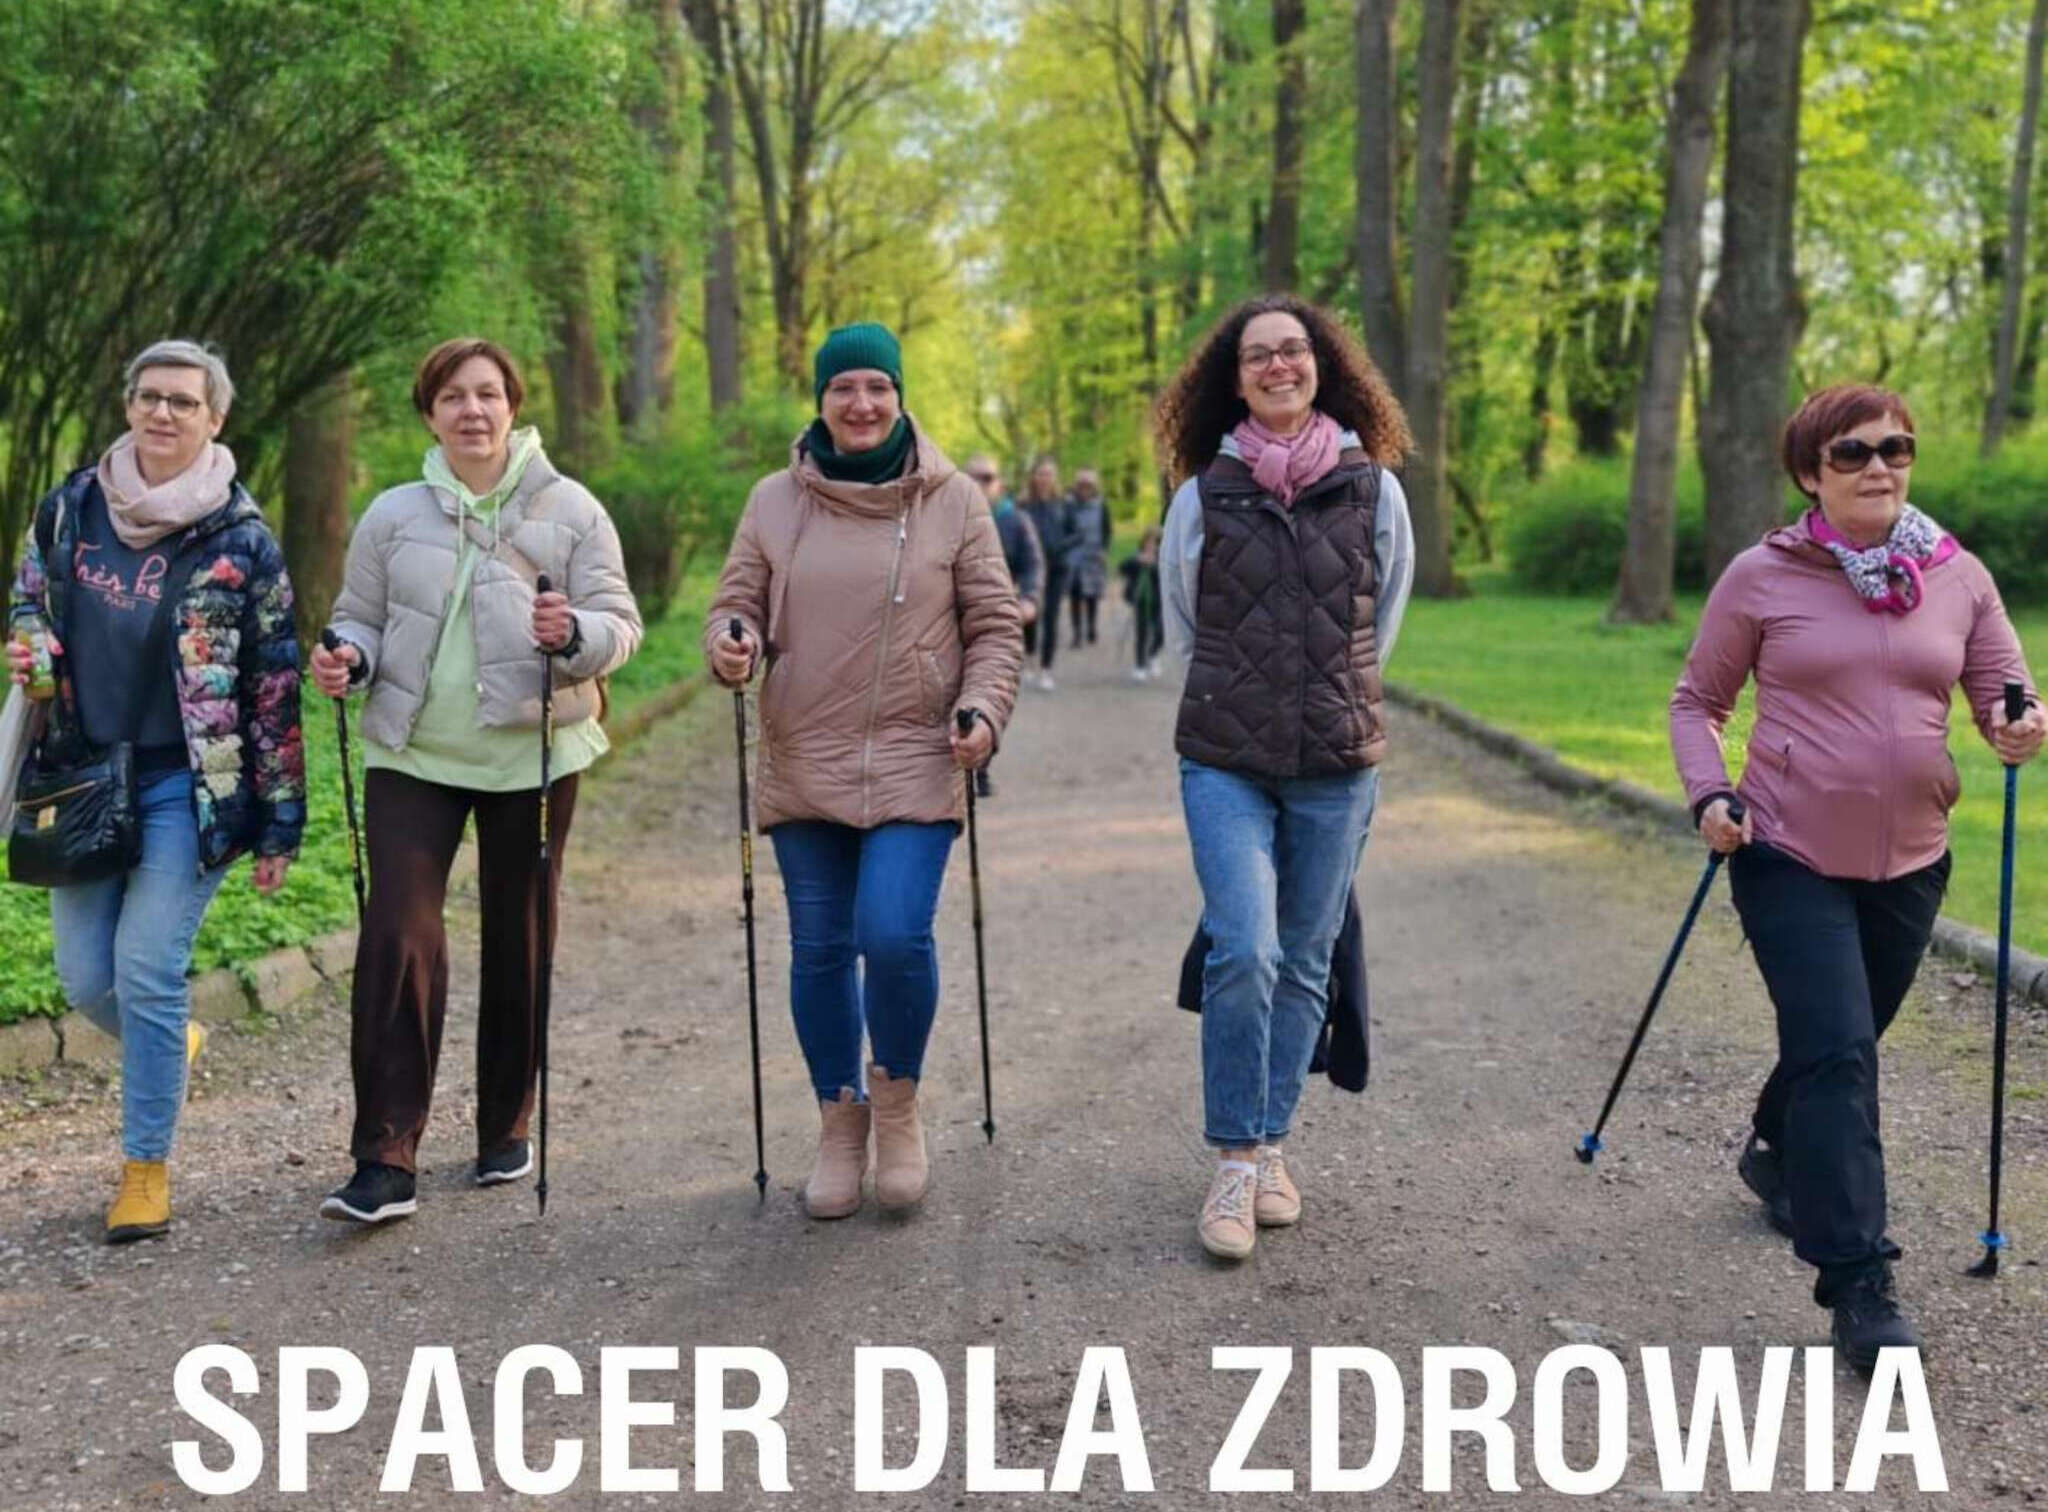 plakat wydarzenia przedstawiający spacerujące osoby.